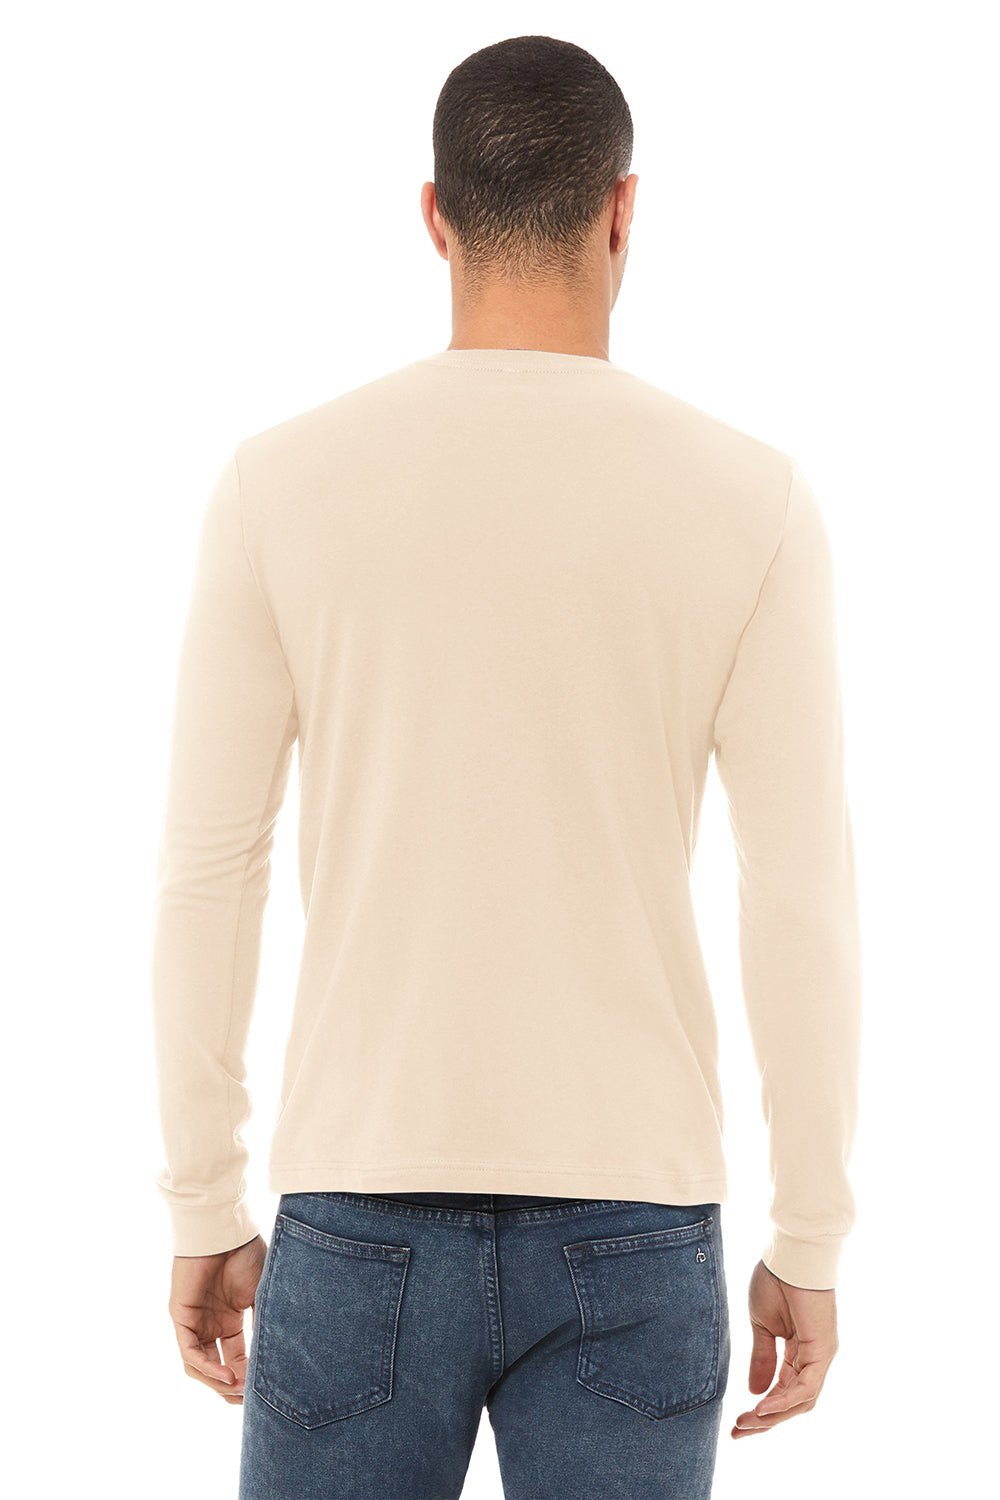 Bella + Canvas BC3501/3501 Mens Jersey Long Sleeve Crewneck T-Shirt Natural Model Back